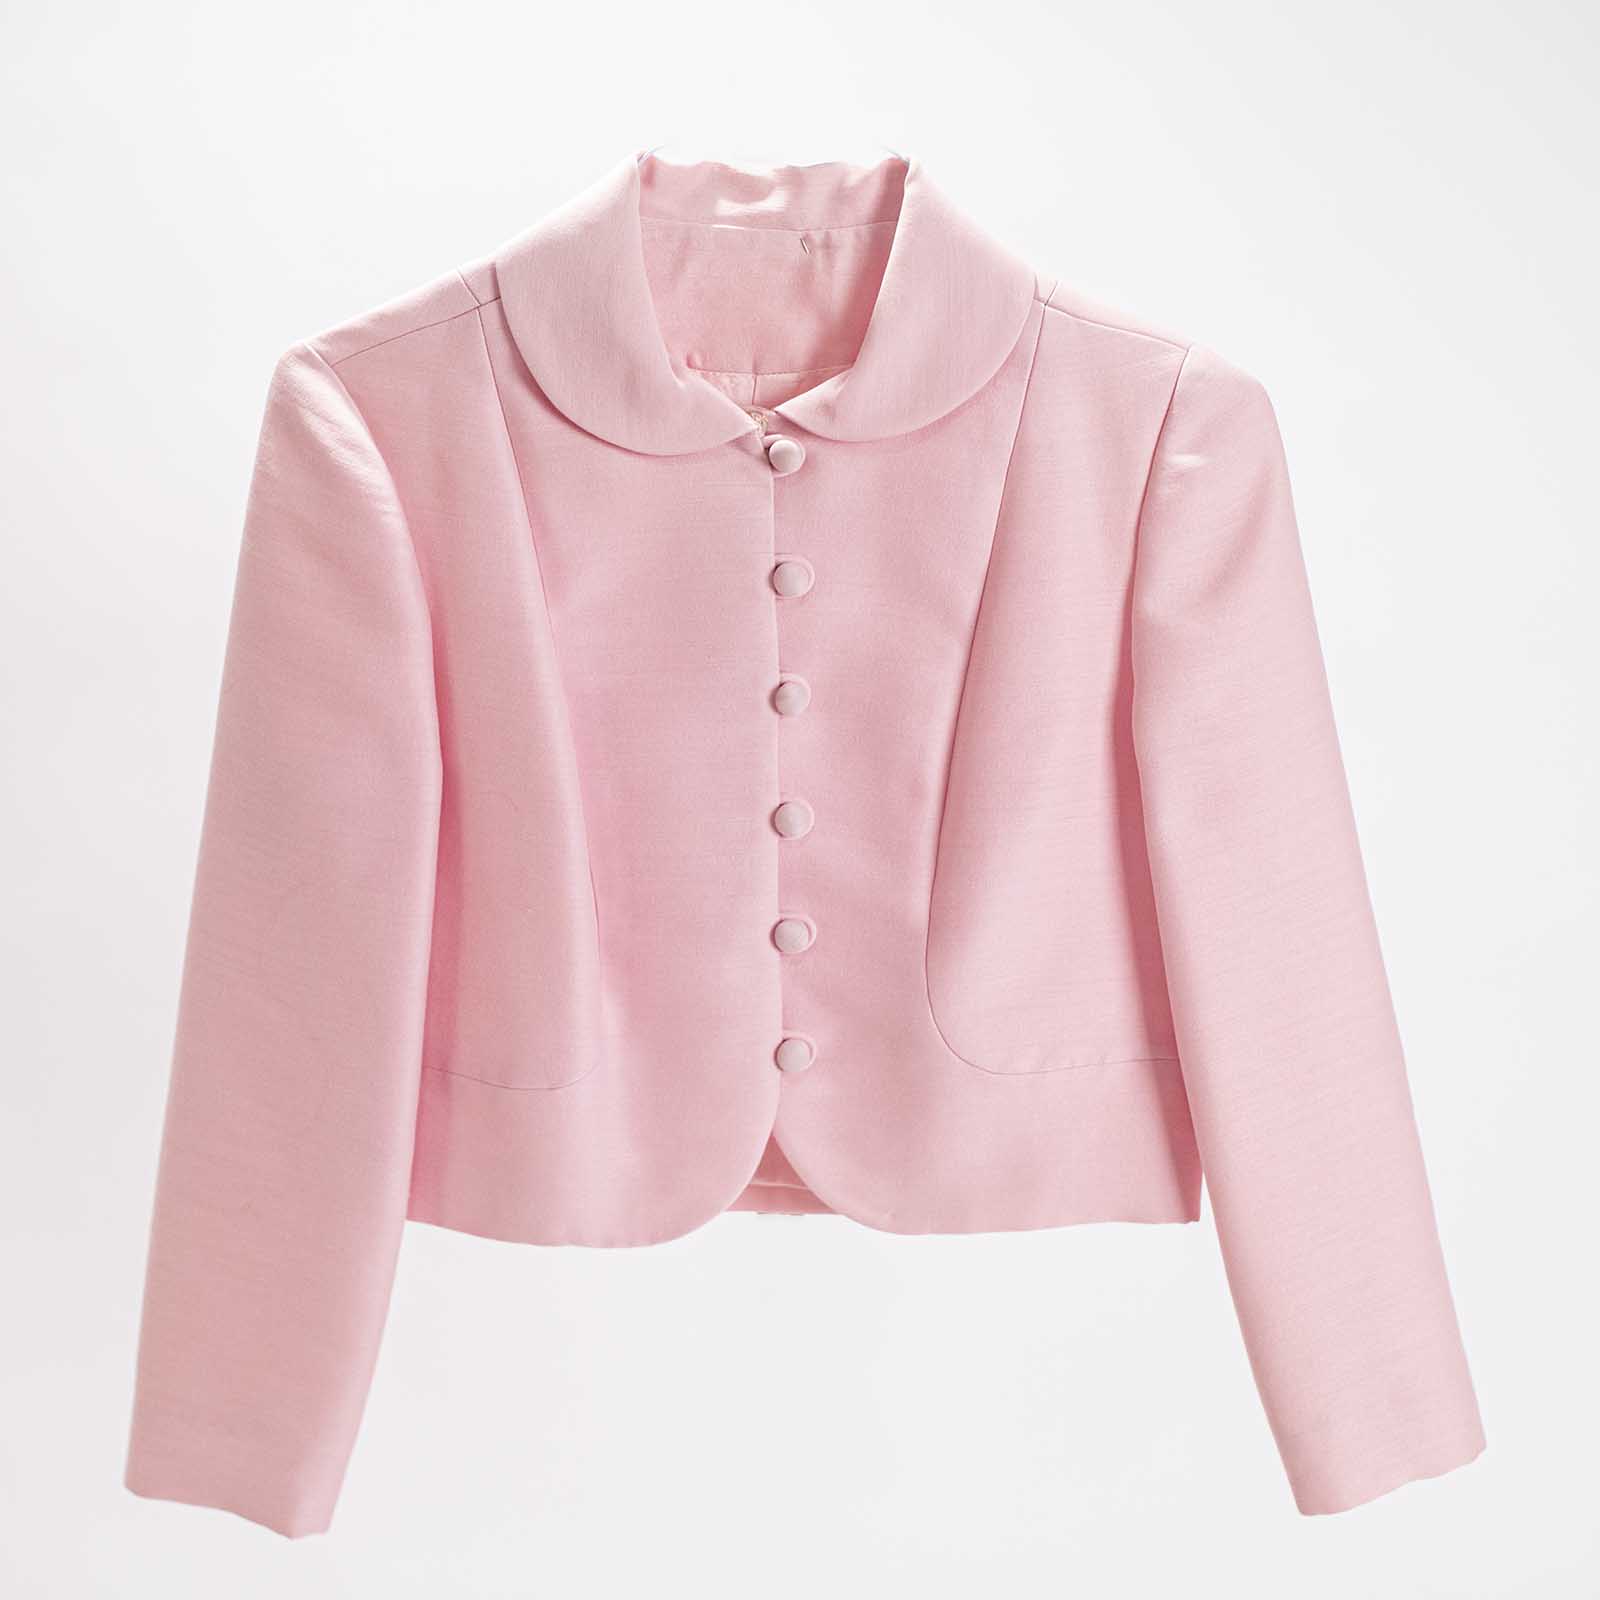 Pink Vintage Dress and Jacket